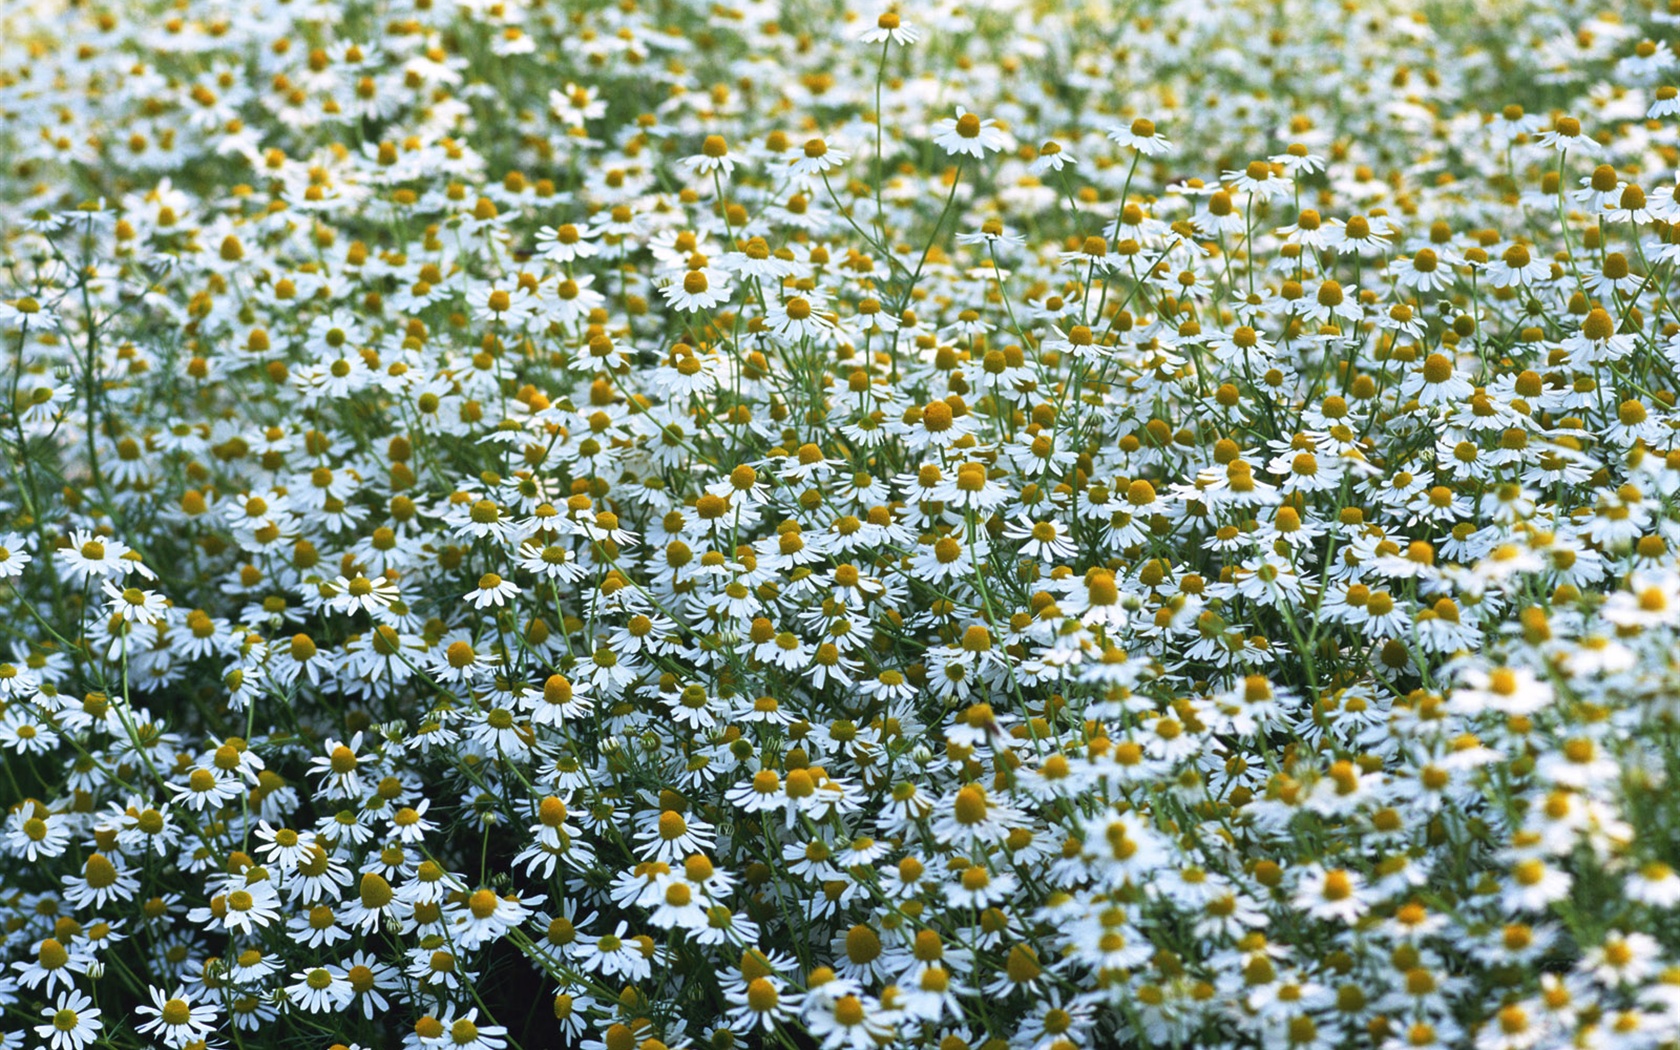 눈같이 흰 꽃 벽지 #10 - 1680x1050